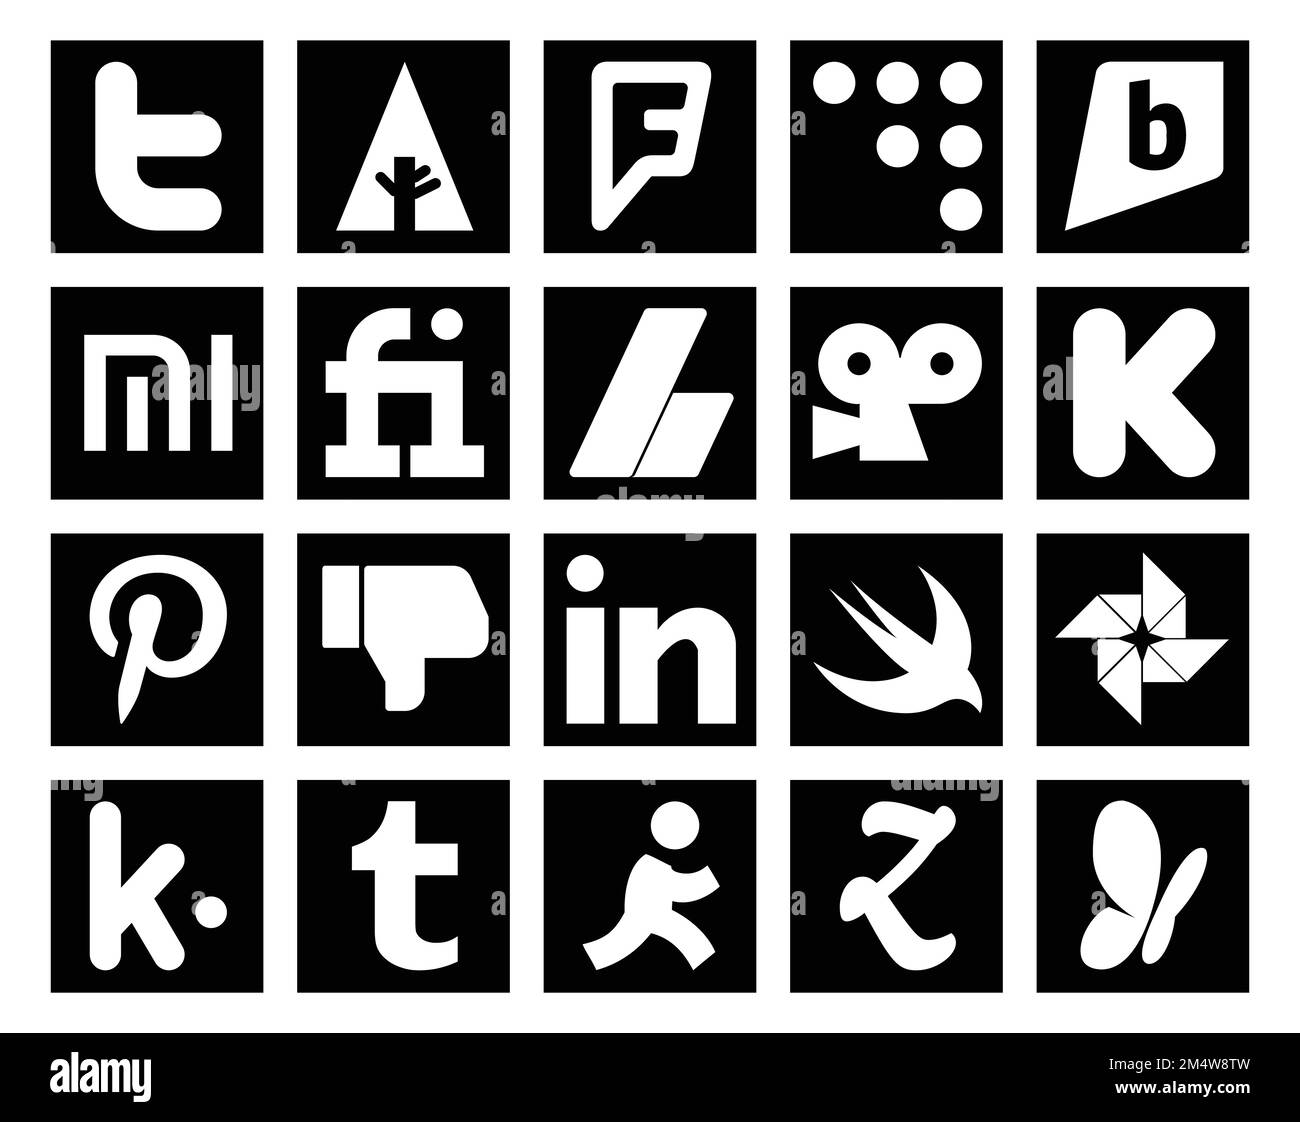 20 Pack d'icônes de réseaux sociaux avec kik. rapide. adsense. linkedin. pinterest Illustration de Vecteur